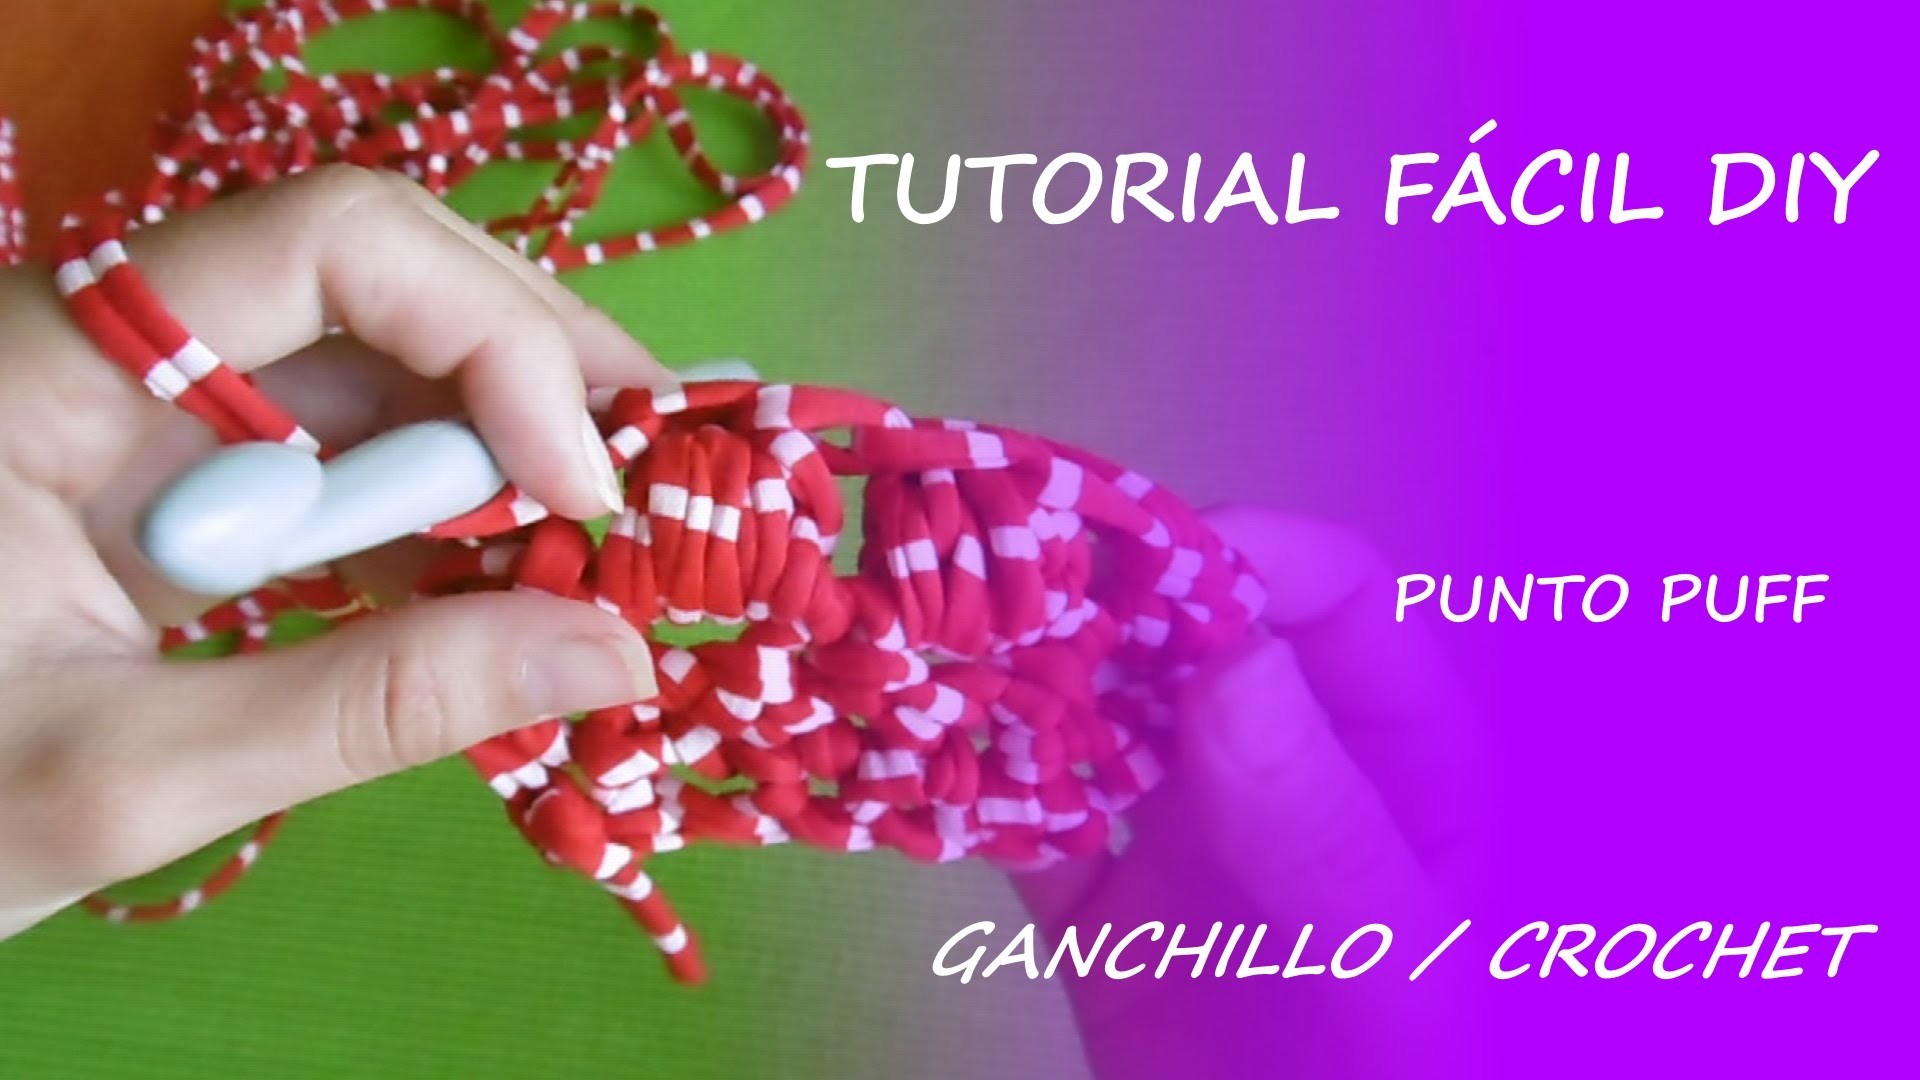 Tutorial cómo hacer punto puff con ganchillo - Fácil DIY